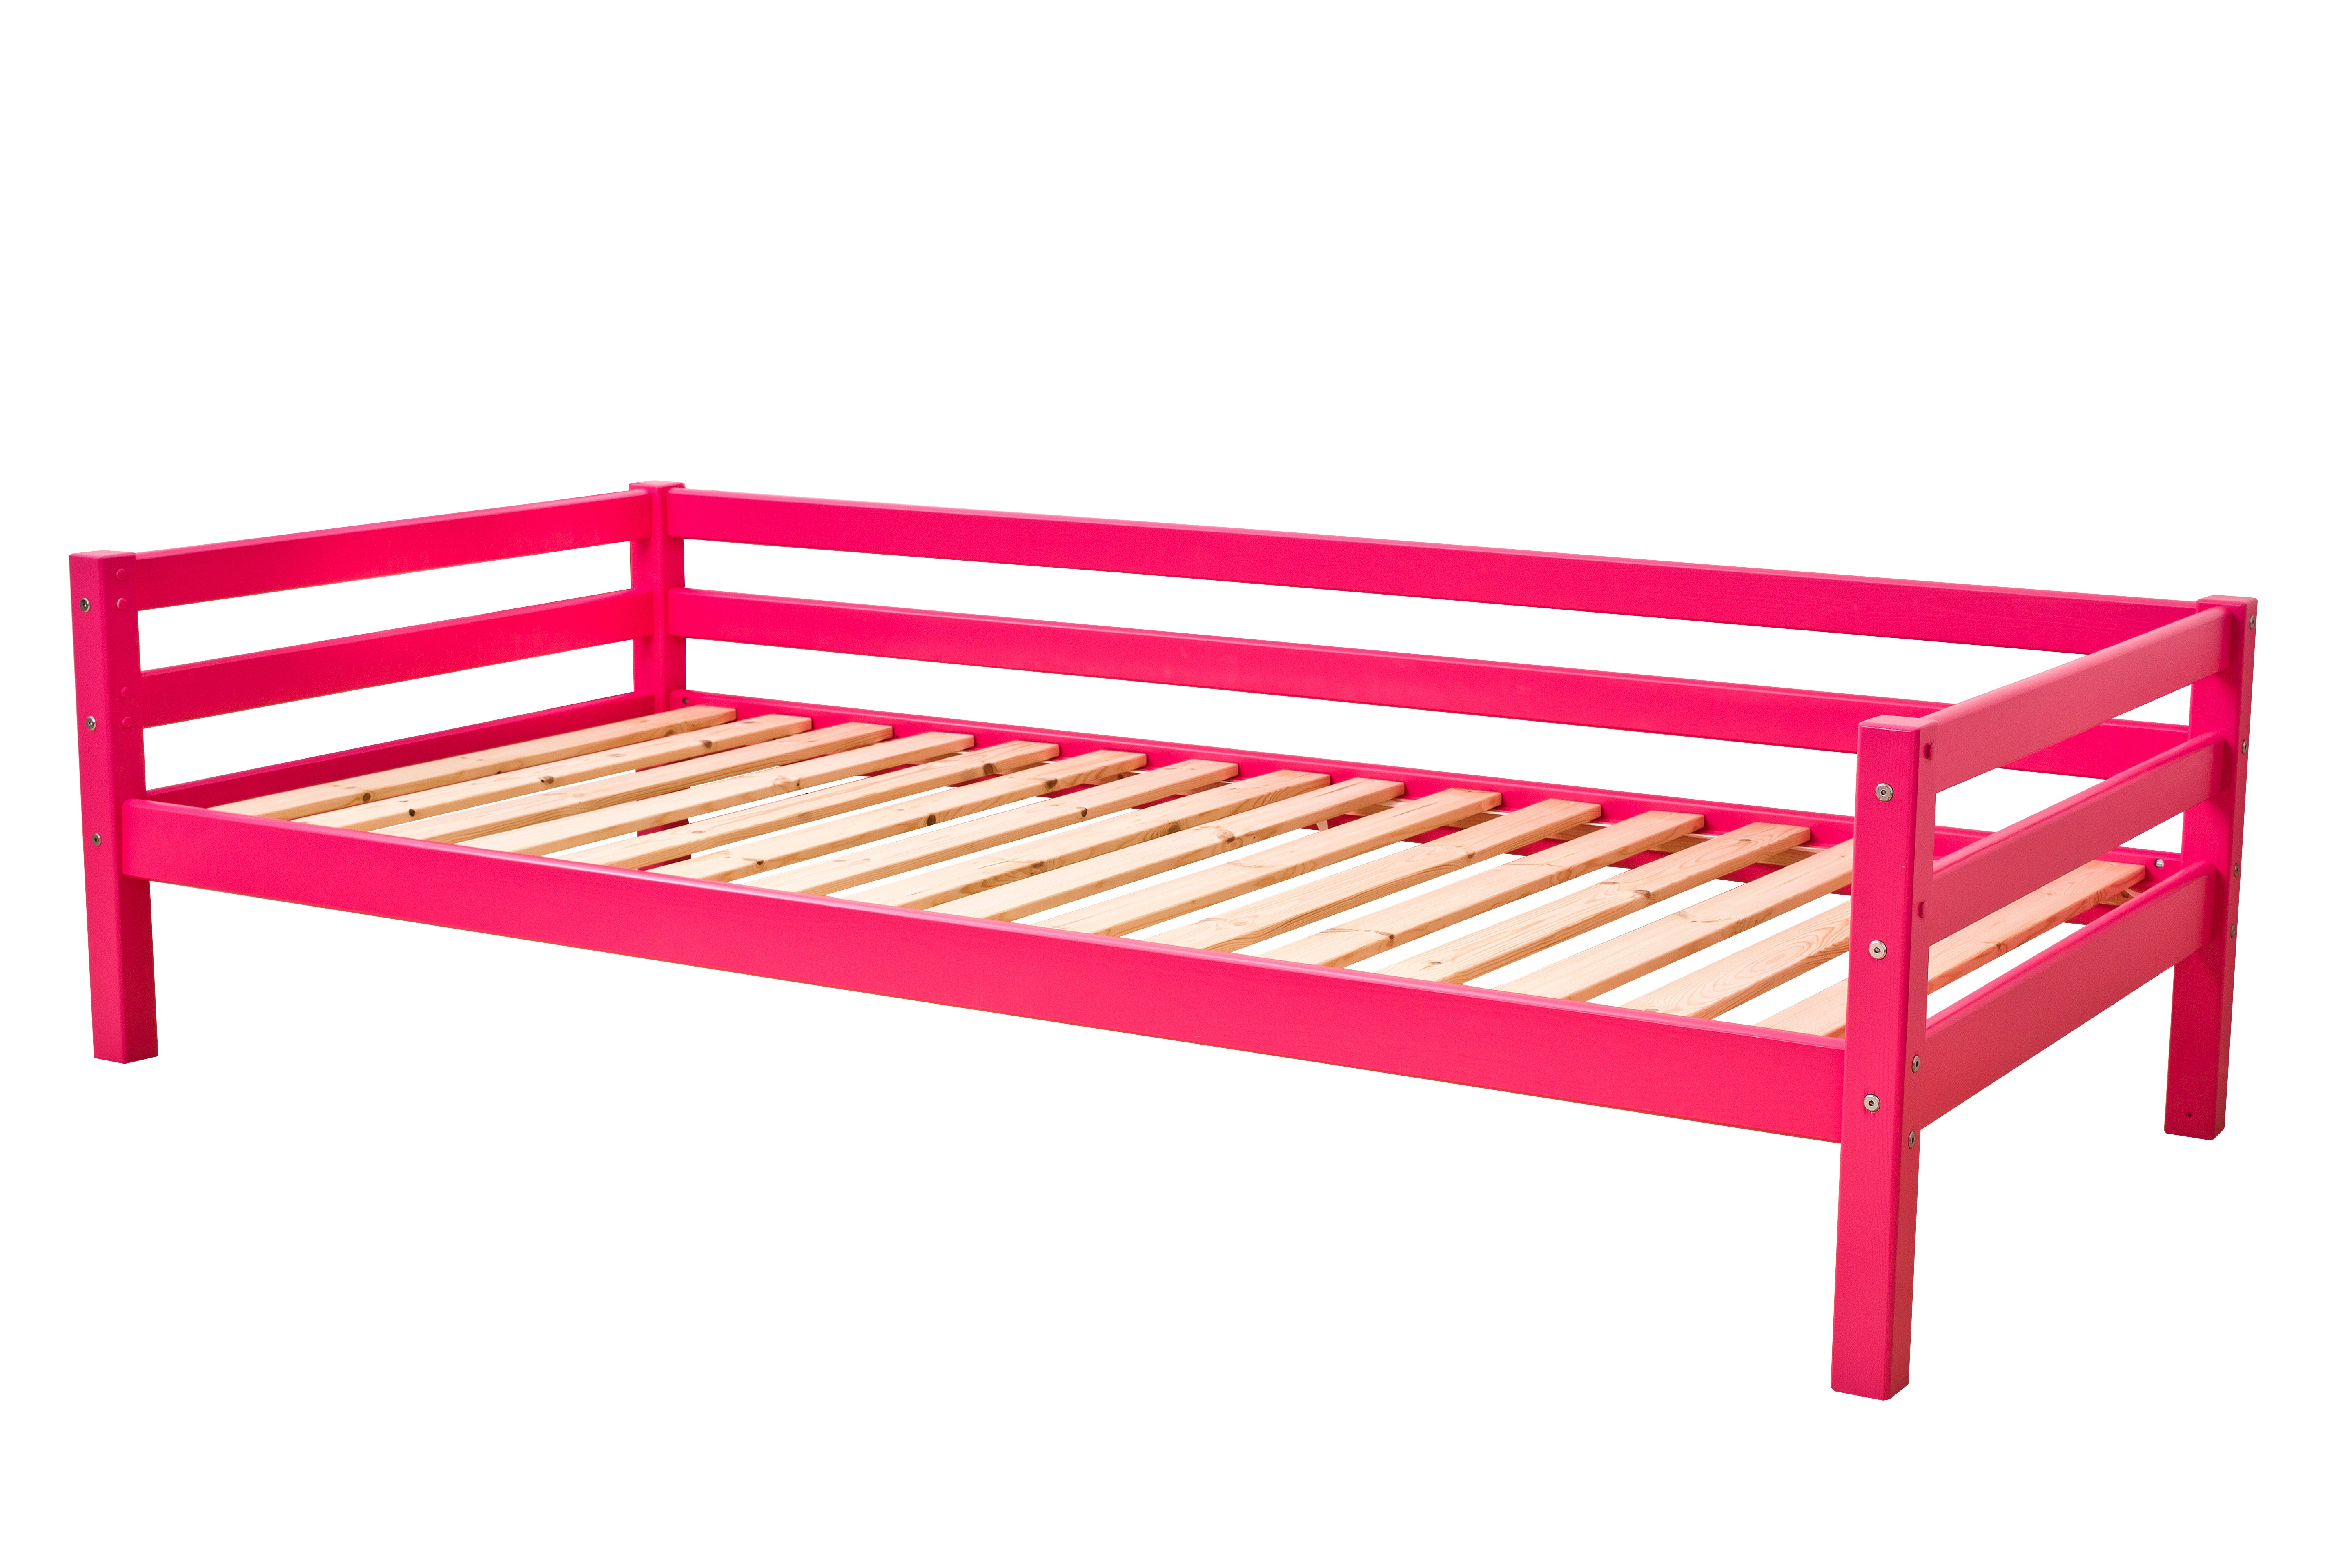 Outlet: ECO Dream seng 90x200 cm med sengehest, Pink